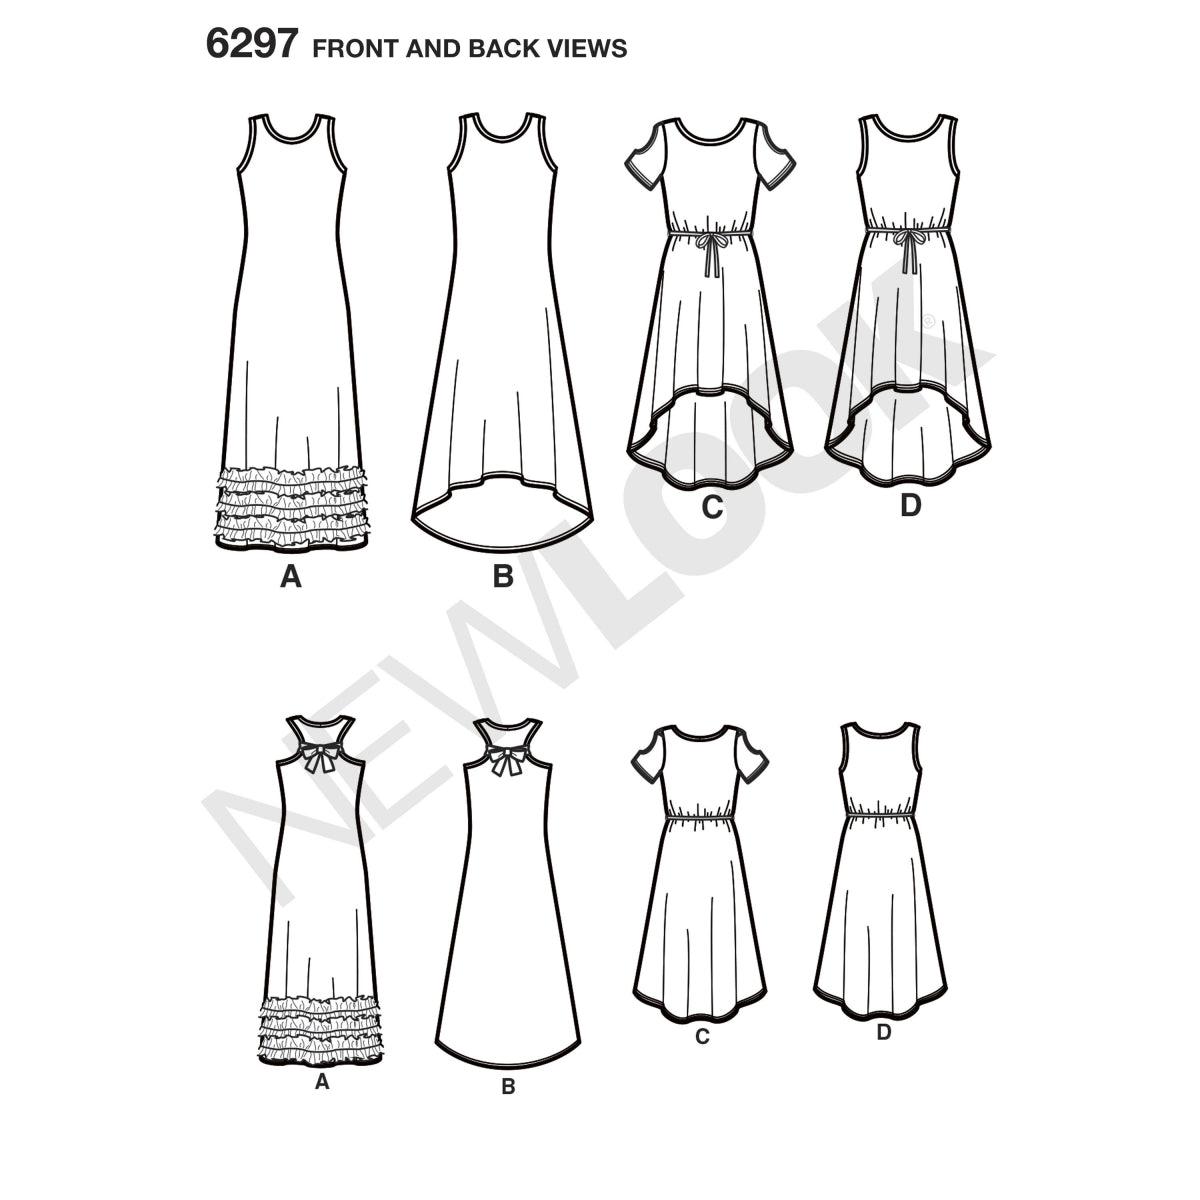 New Look 6297 Knit Maxi Dress Age 8-16